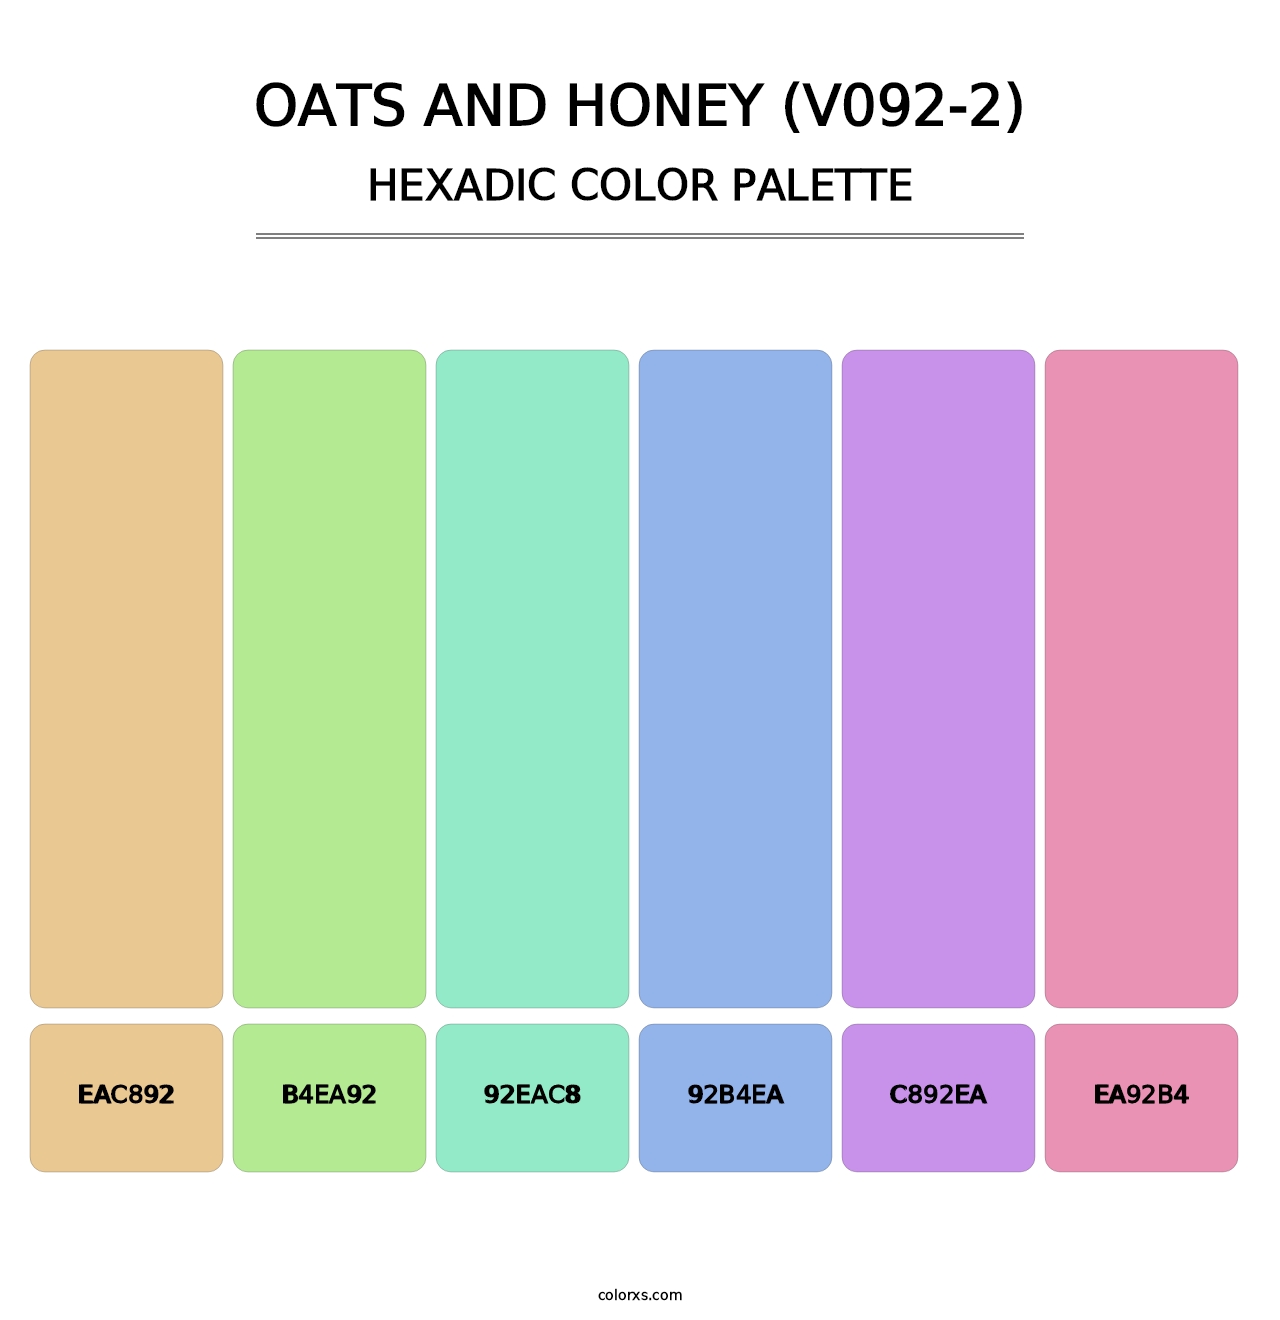 Oats and Honey (V092-2) - Hexadic Color Palette